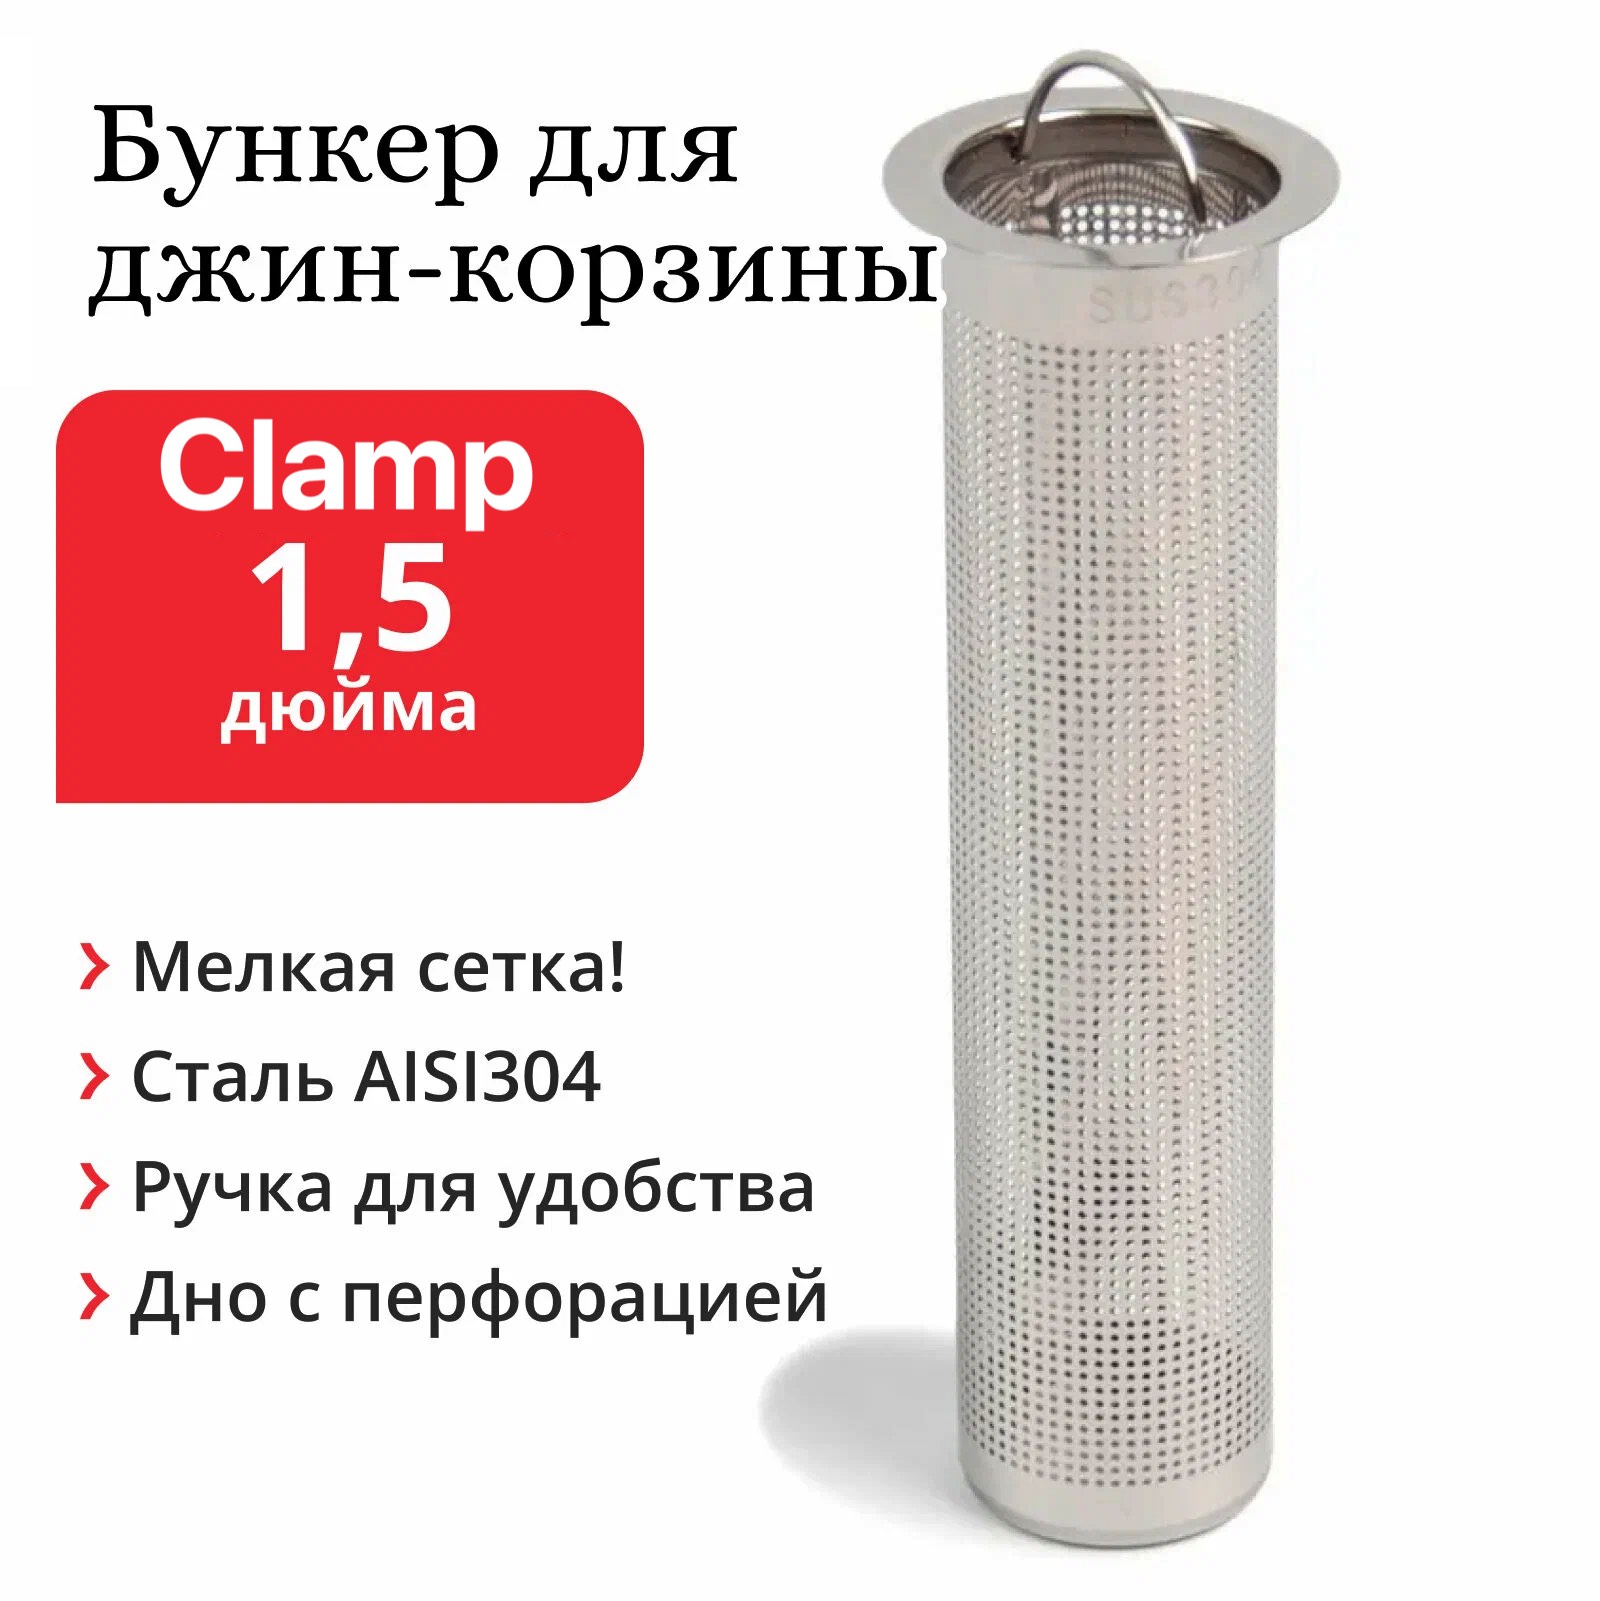 Стаканчик-сито для джин-корзины (царги) под Clamp 1,5 дюйма